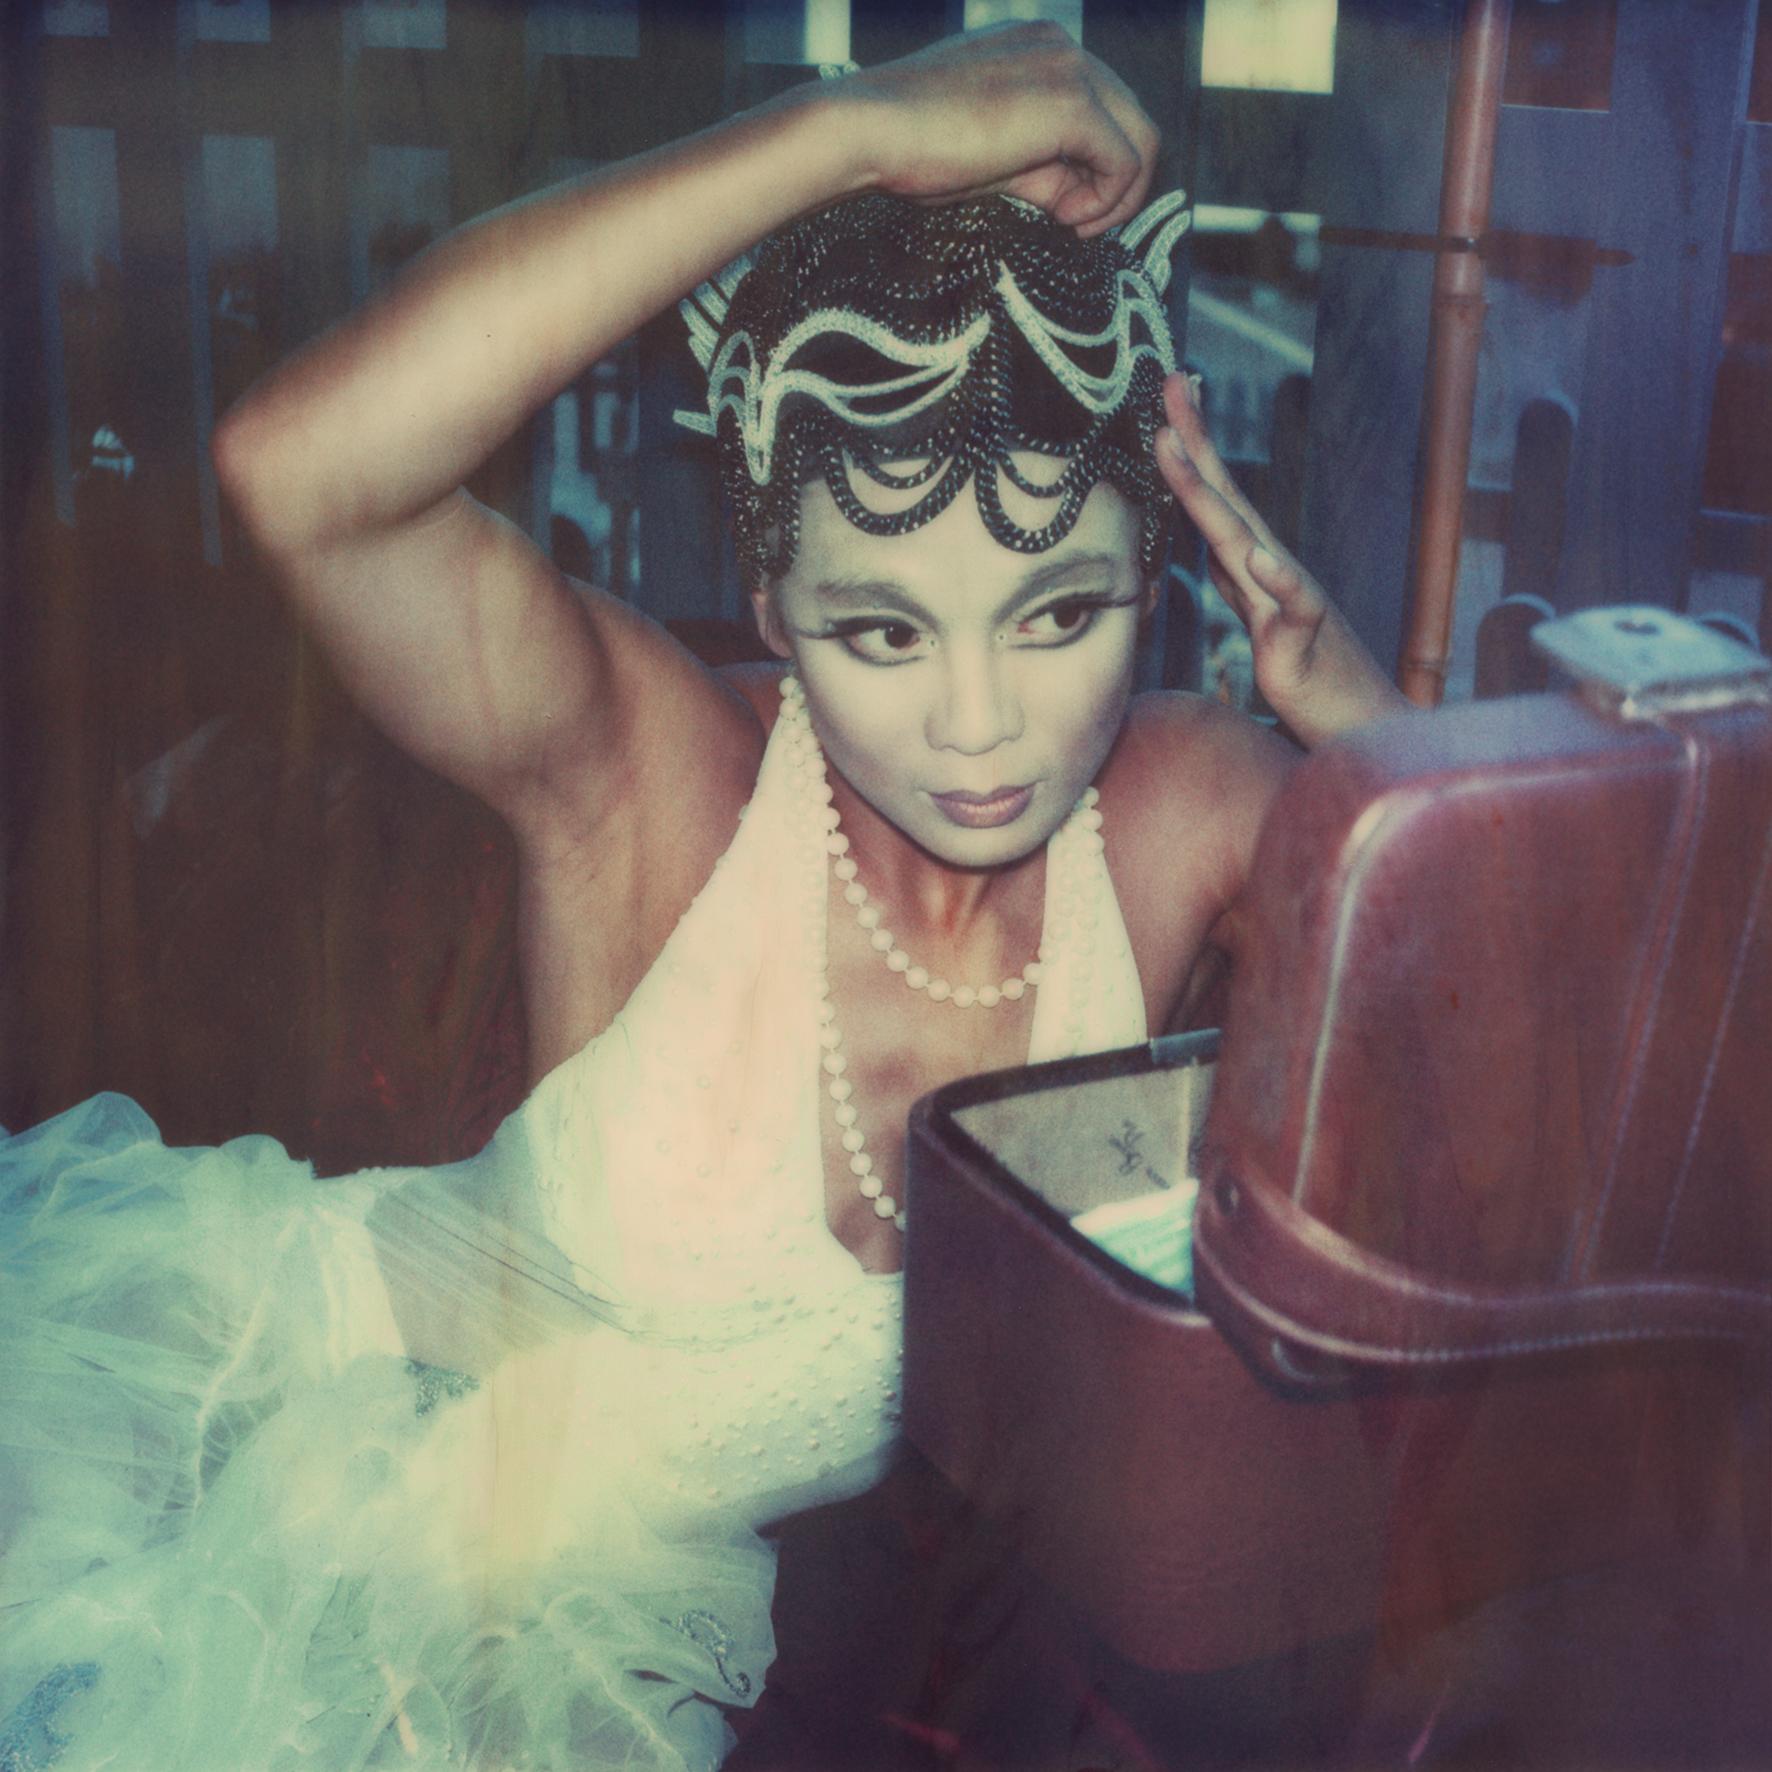 Carmen de Vos Figurative Photograph – Amaluna's Day Off #50, Zeitgenössisch, 21. Jahrhundert, Polaroid, figürliches Fotogra